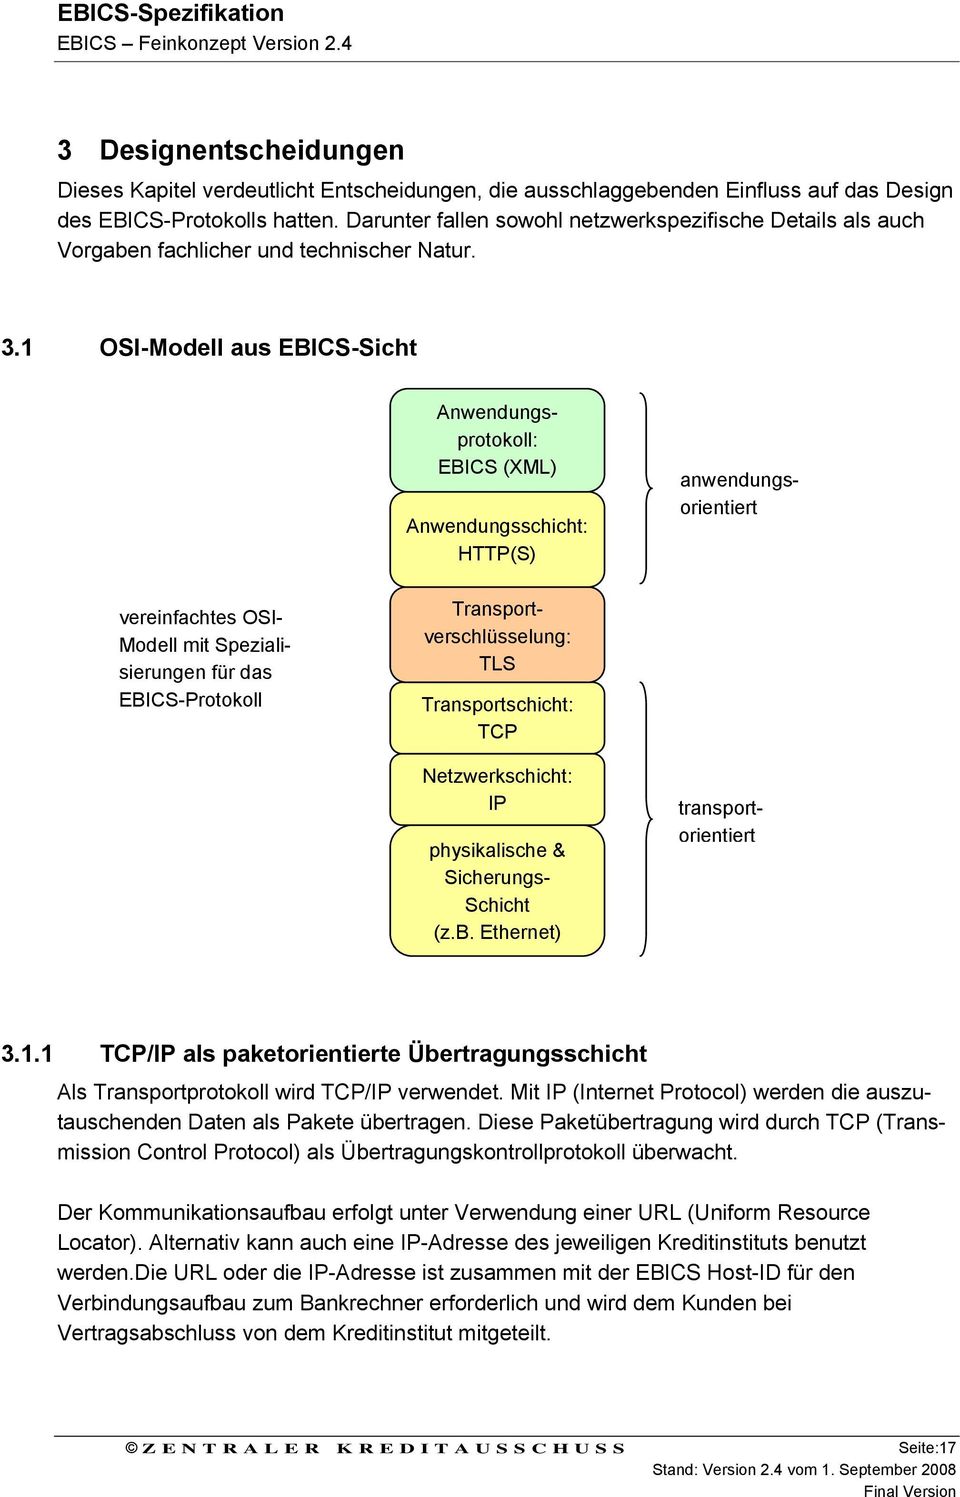 1 OSI-Modell aus EBICS-Sicht Anwendungsprotokoll: EBICS (XML) Anwendungsschicht: HTTP(S) transportorientiert anwendungsorientiert vereinfachtes OSI- Modell mit Spezialisierungen für das